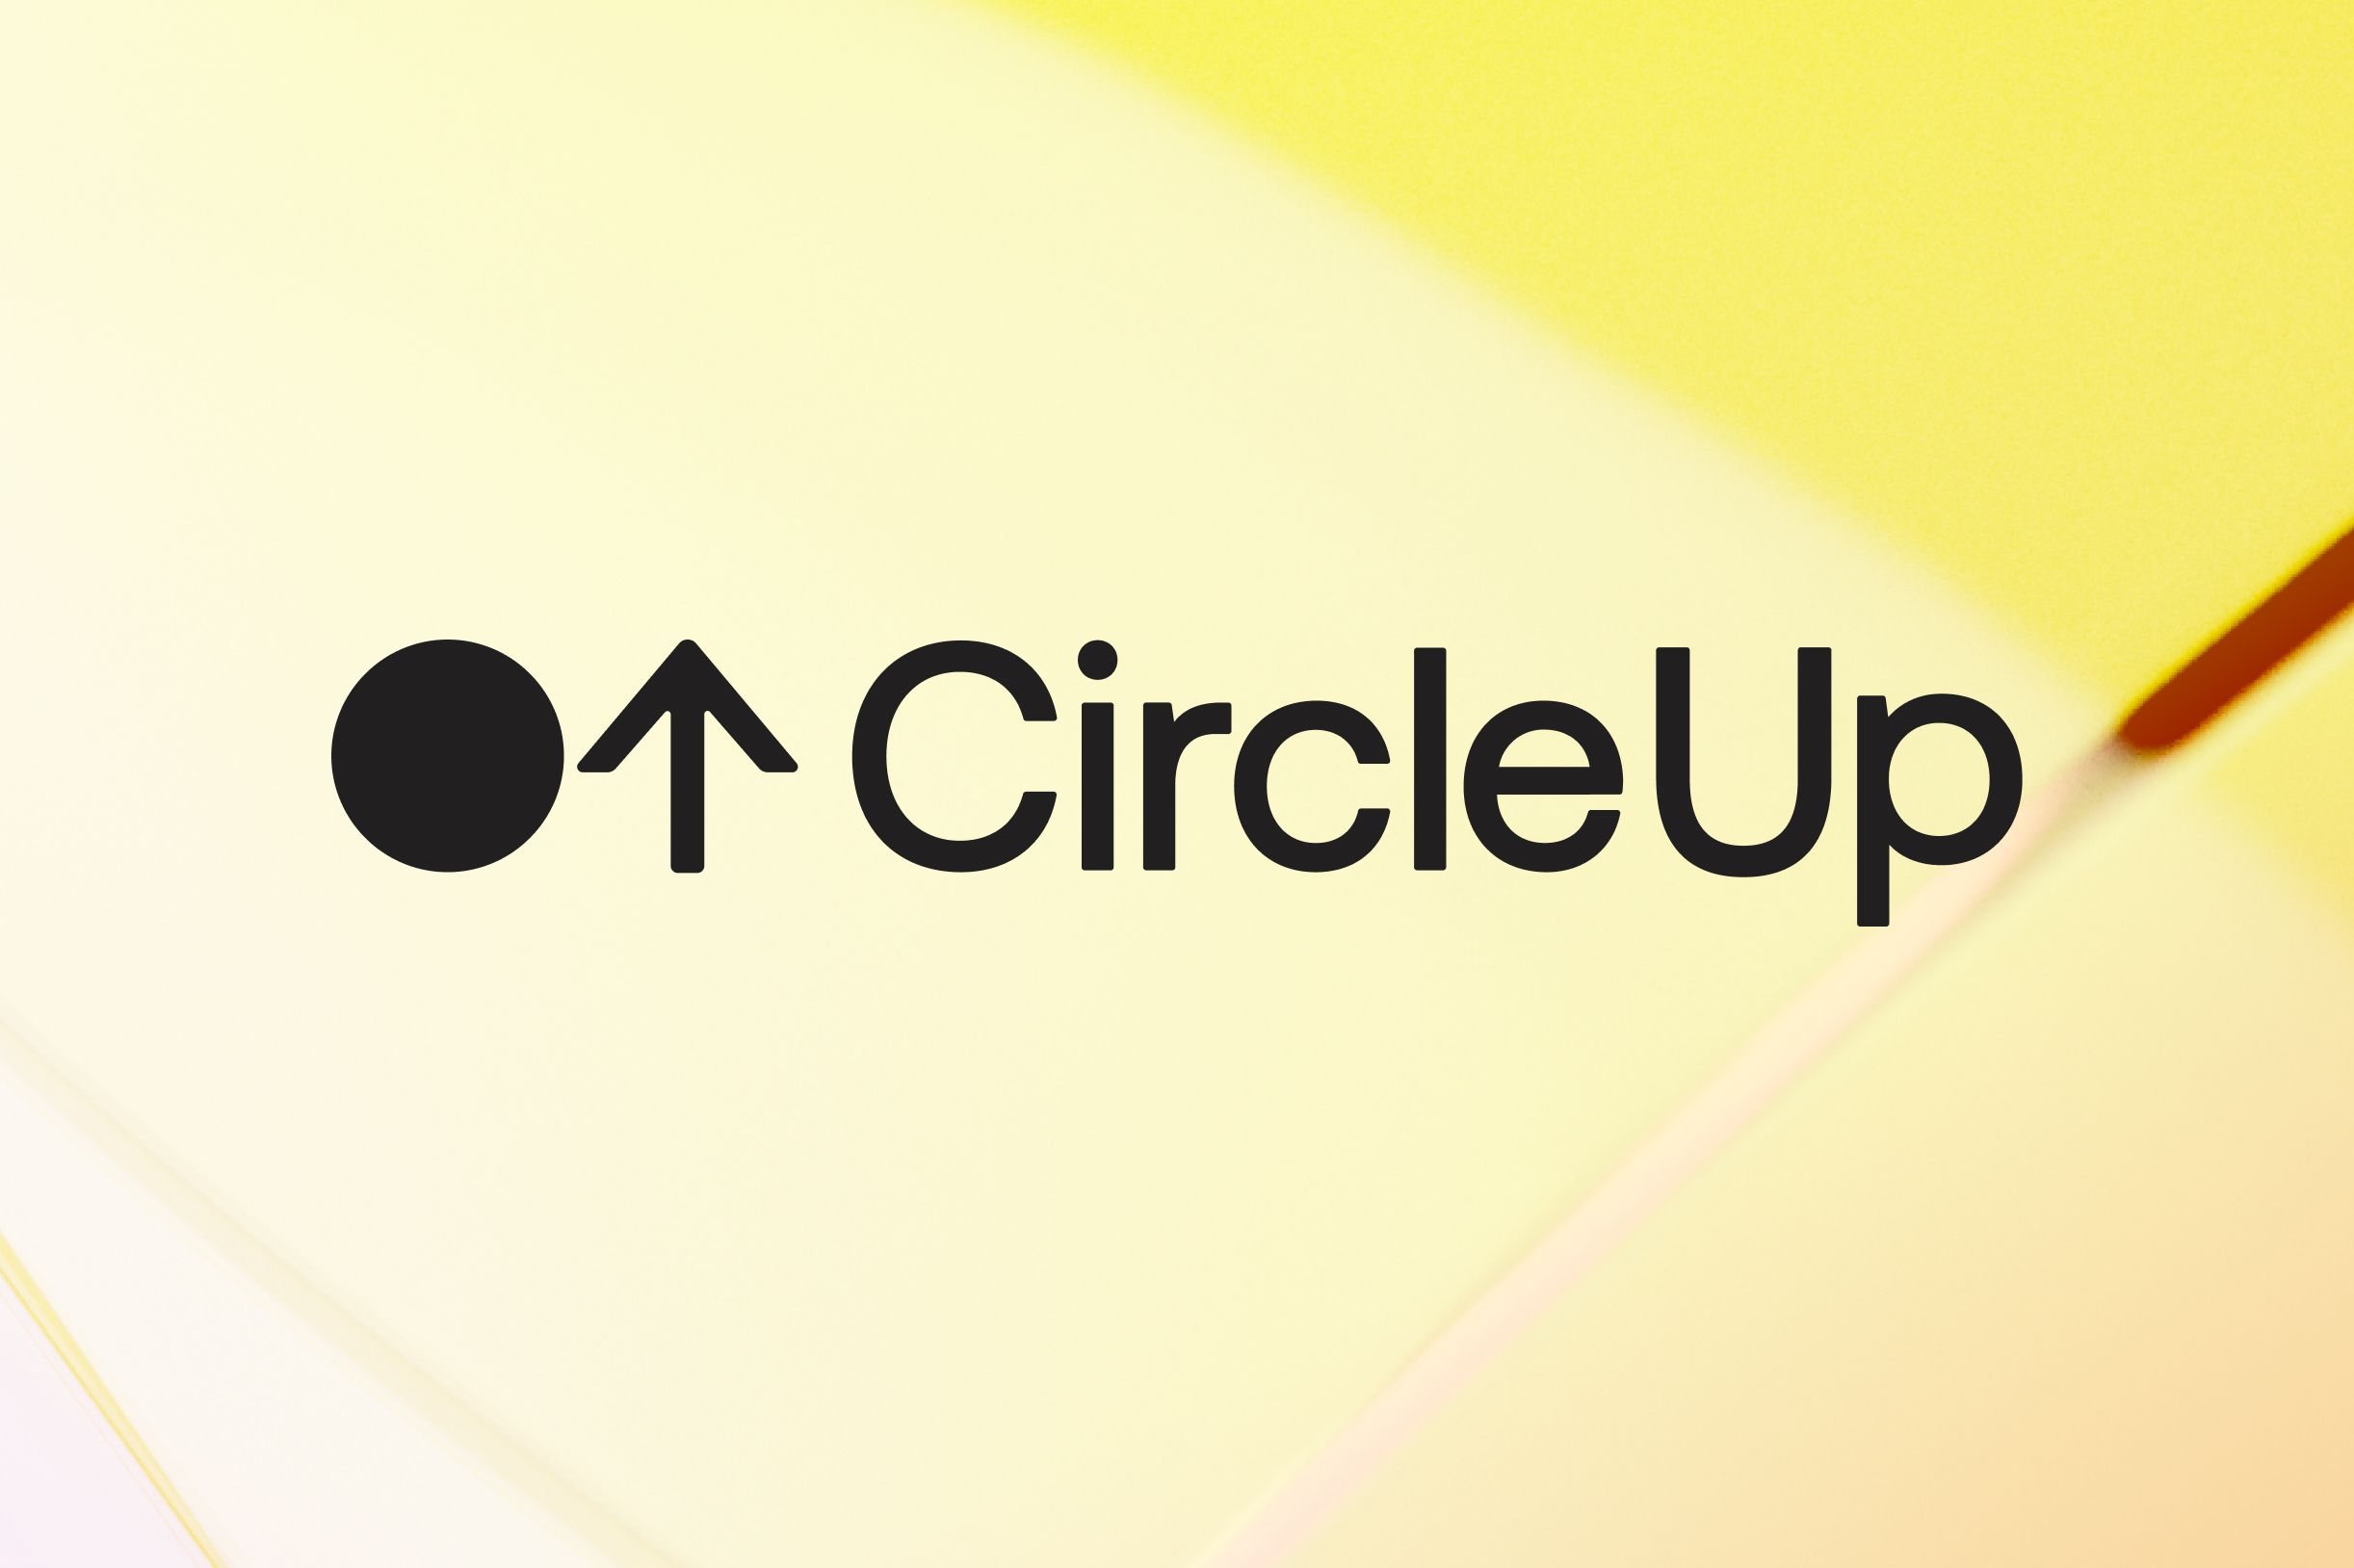 (c) Circleup.com